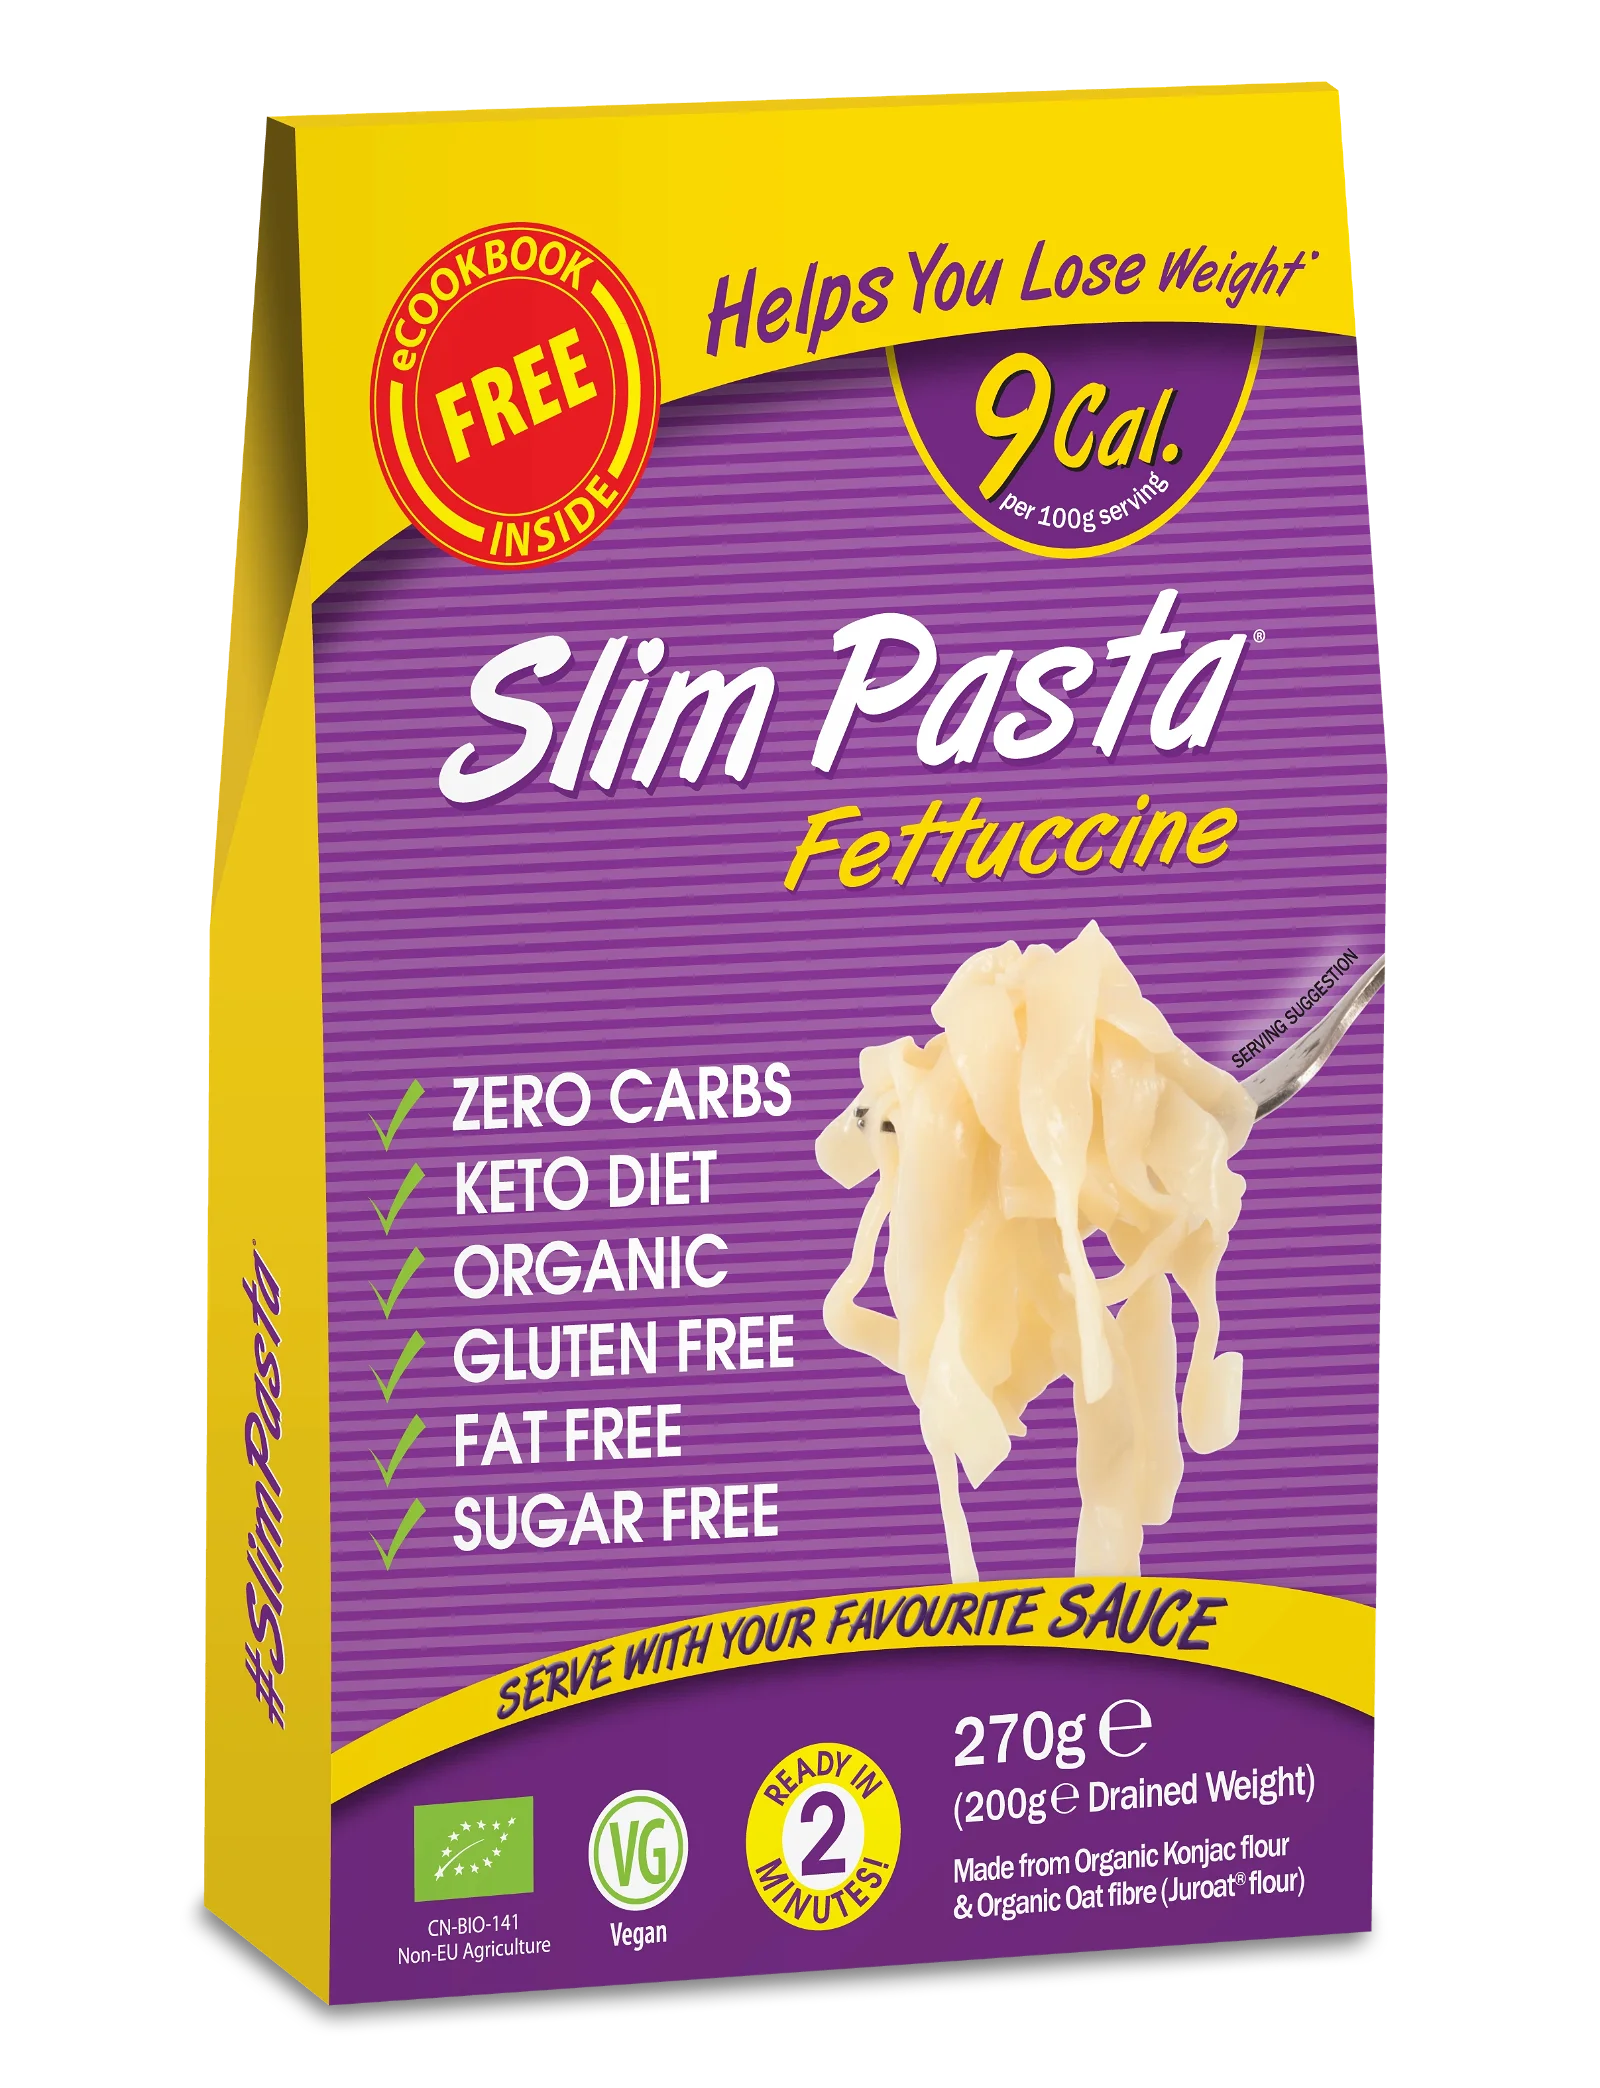 Slim Pasta Fettuccine Original - Pack of 5